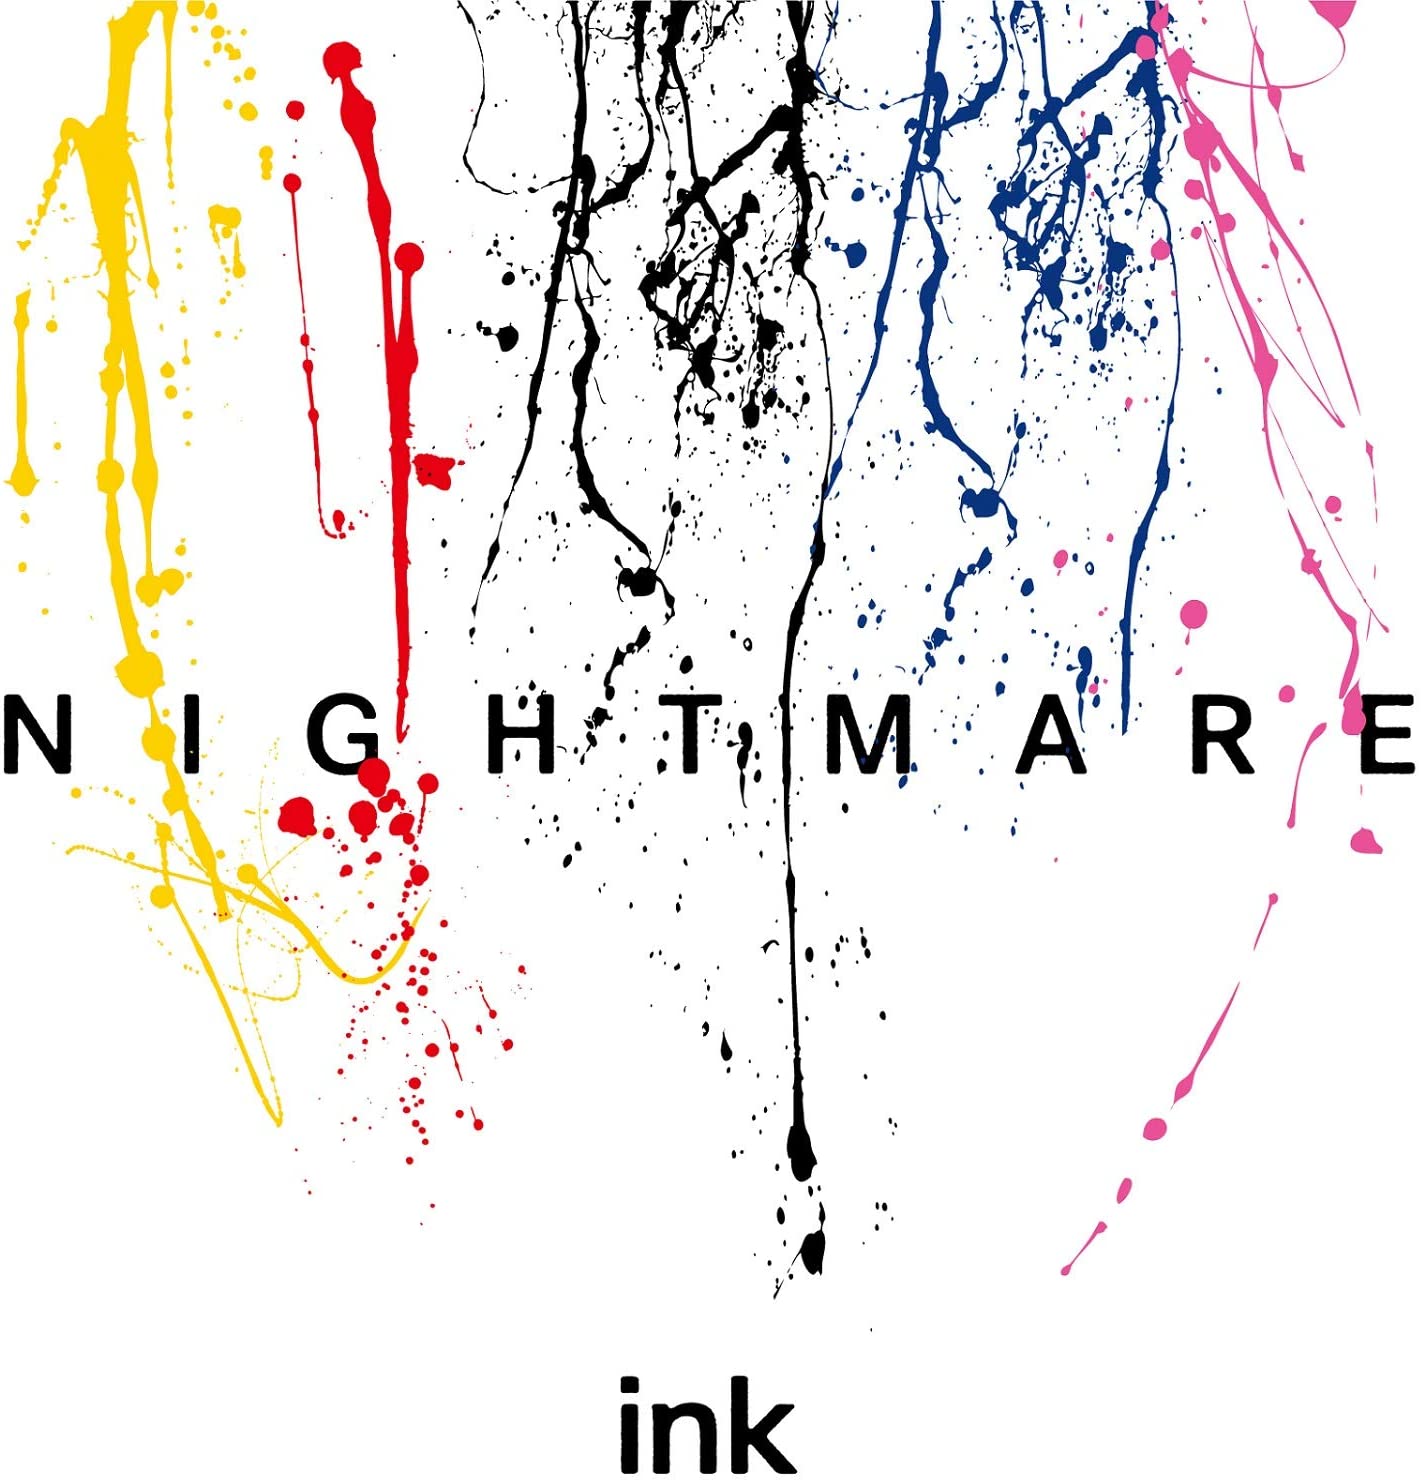 NIGHTMARE/ink